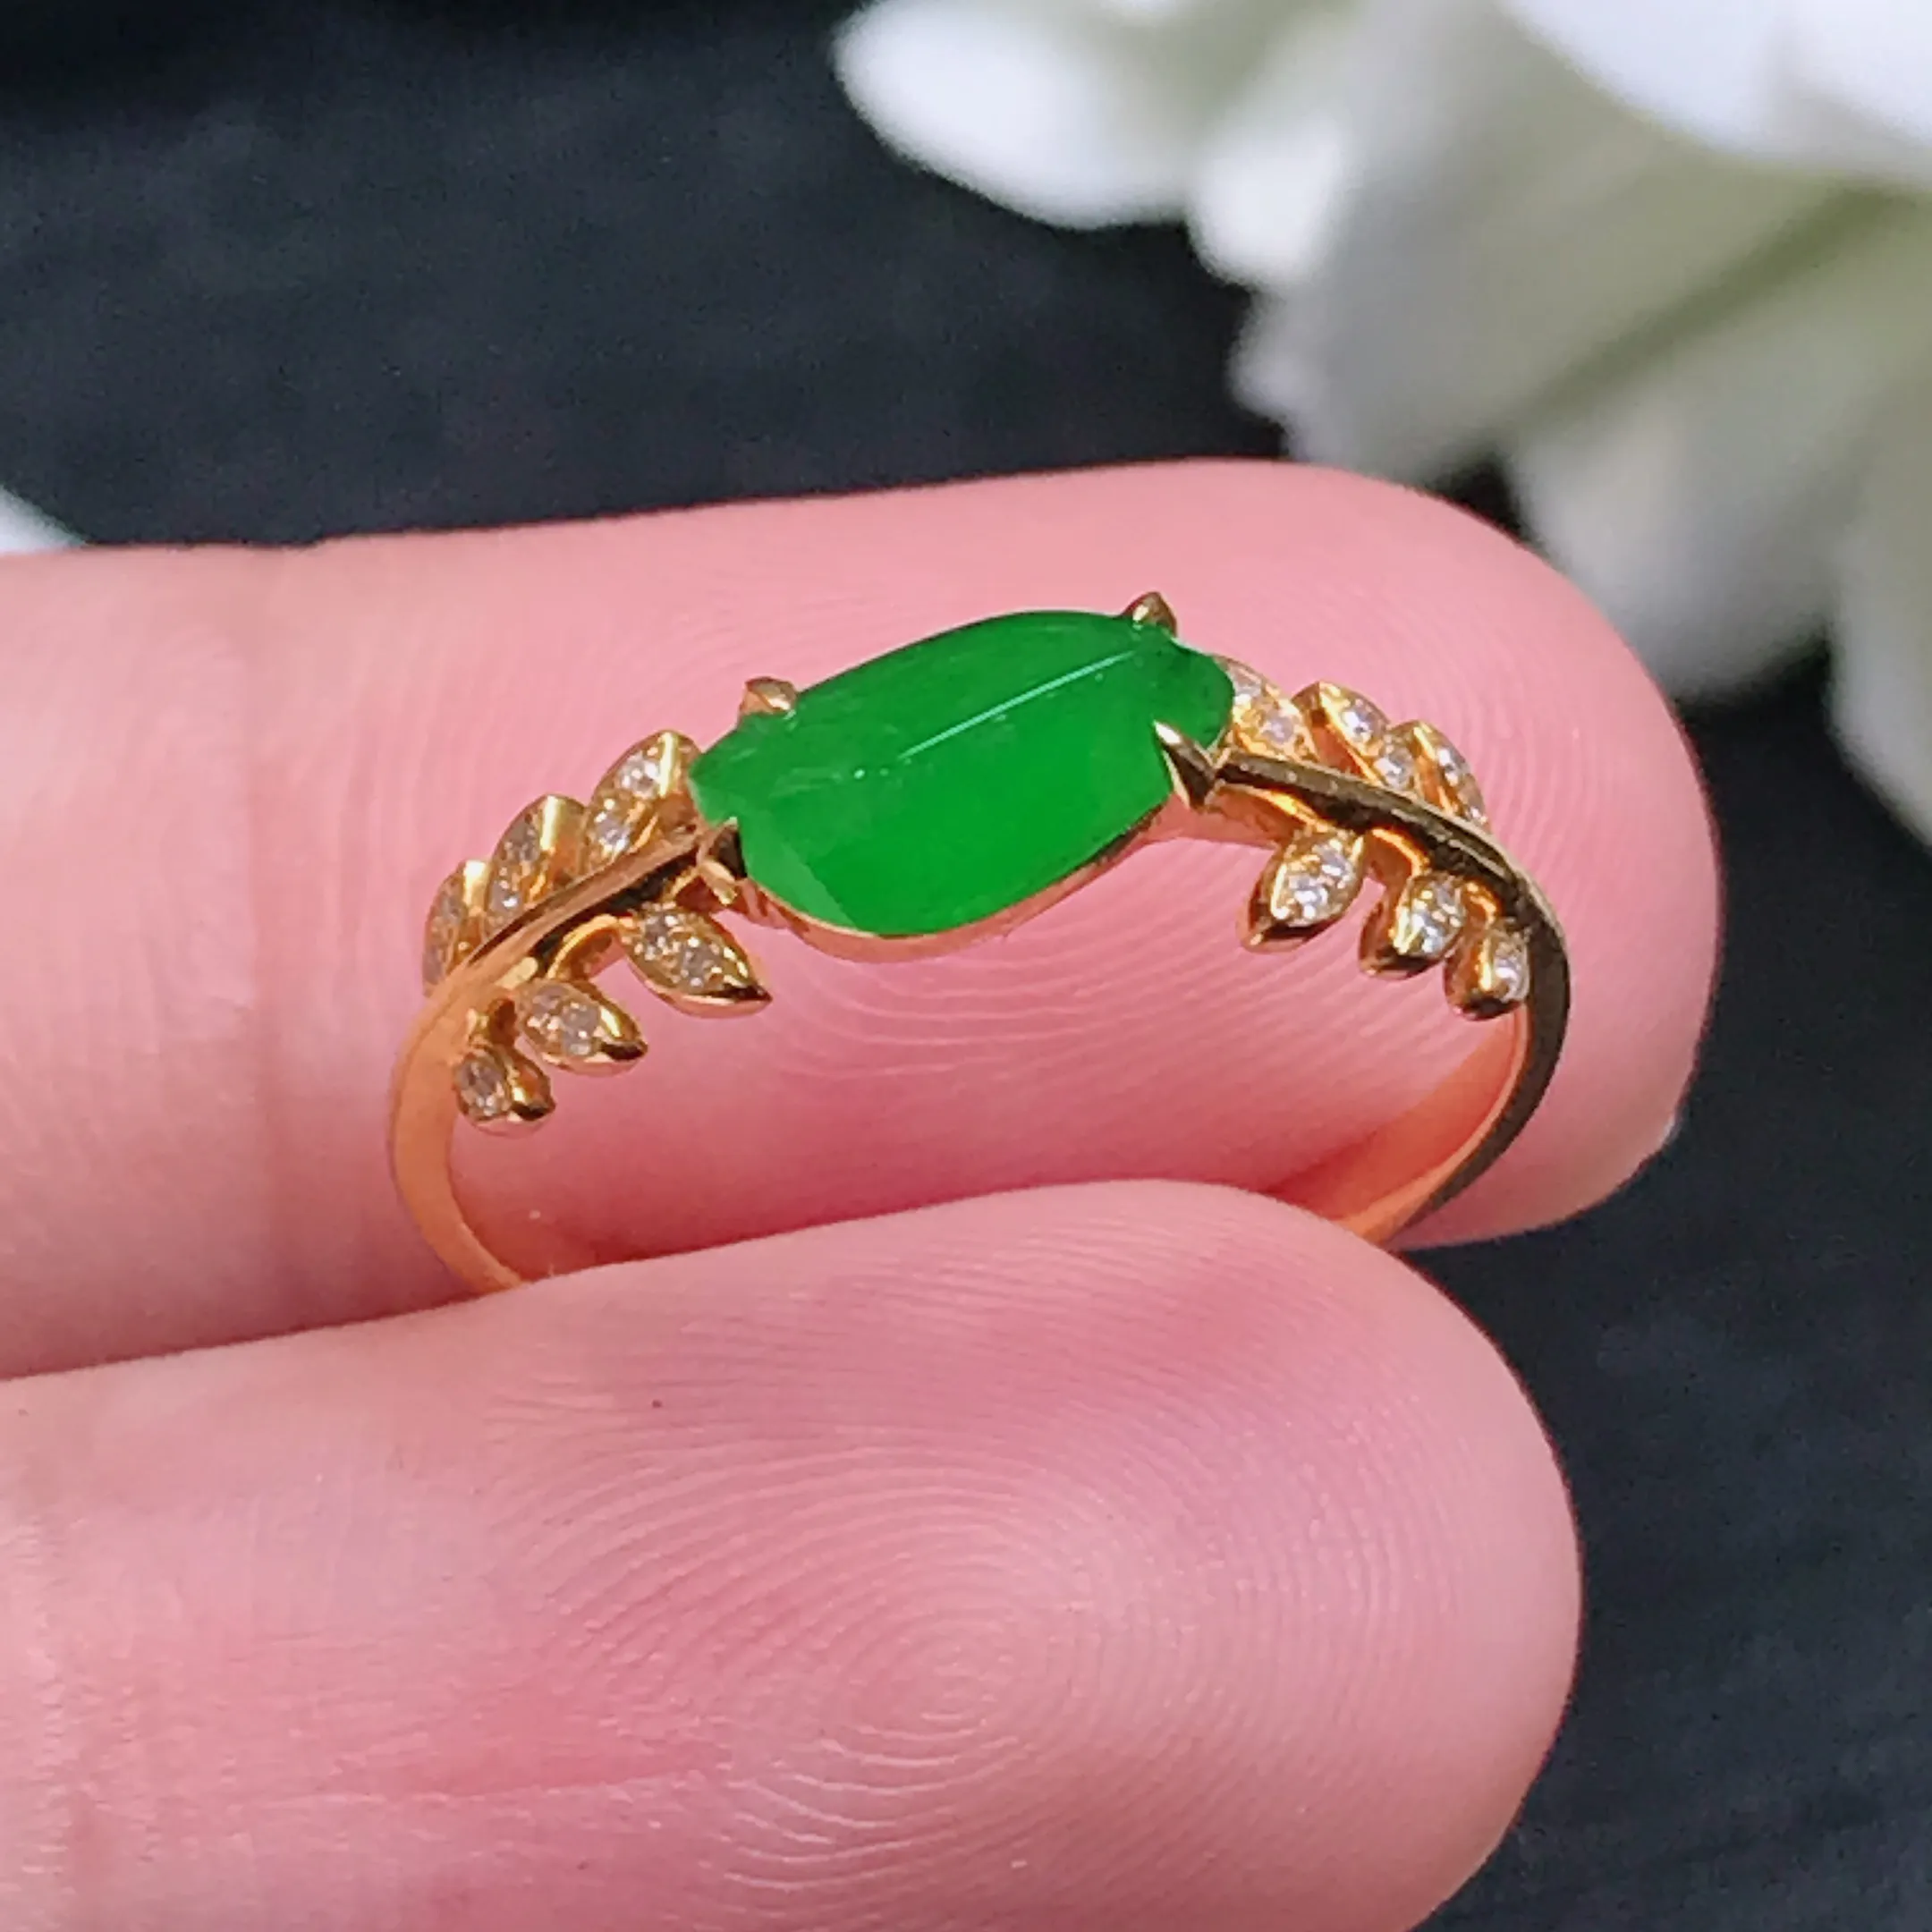 严选推荐戒指，老坑冰种满色帝王绿戒指，18k金钻镶嵌而成，简约时尚，品相佳，佩戴效果佳，尽显气